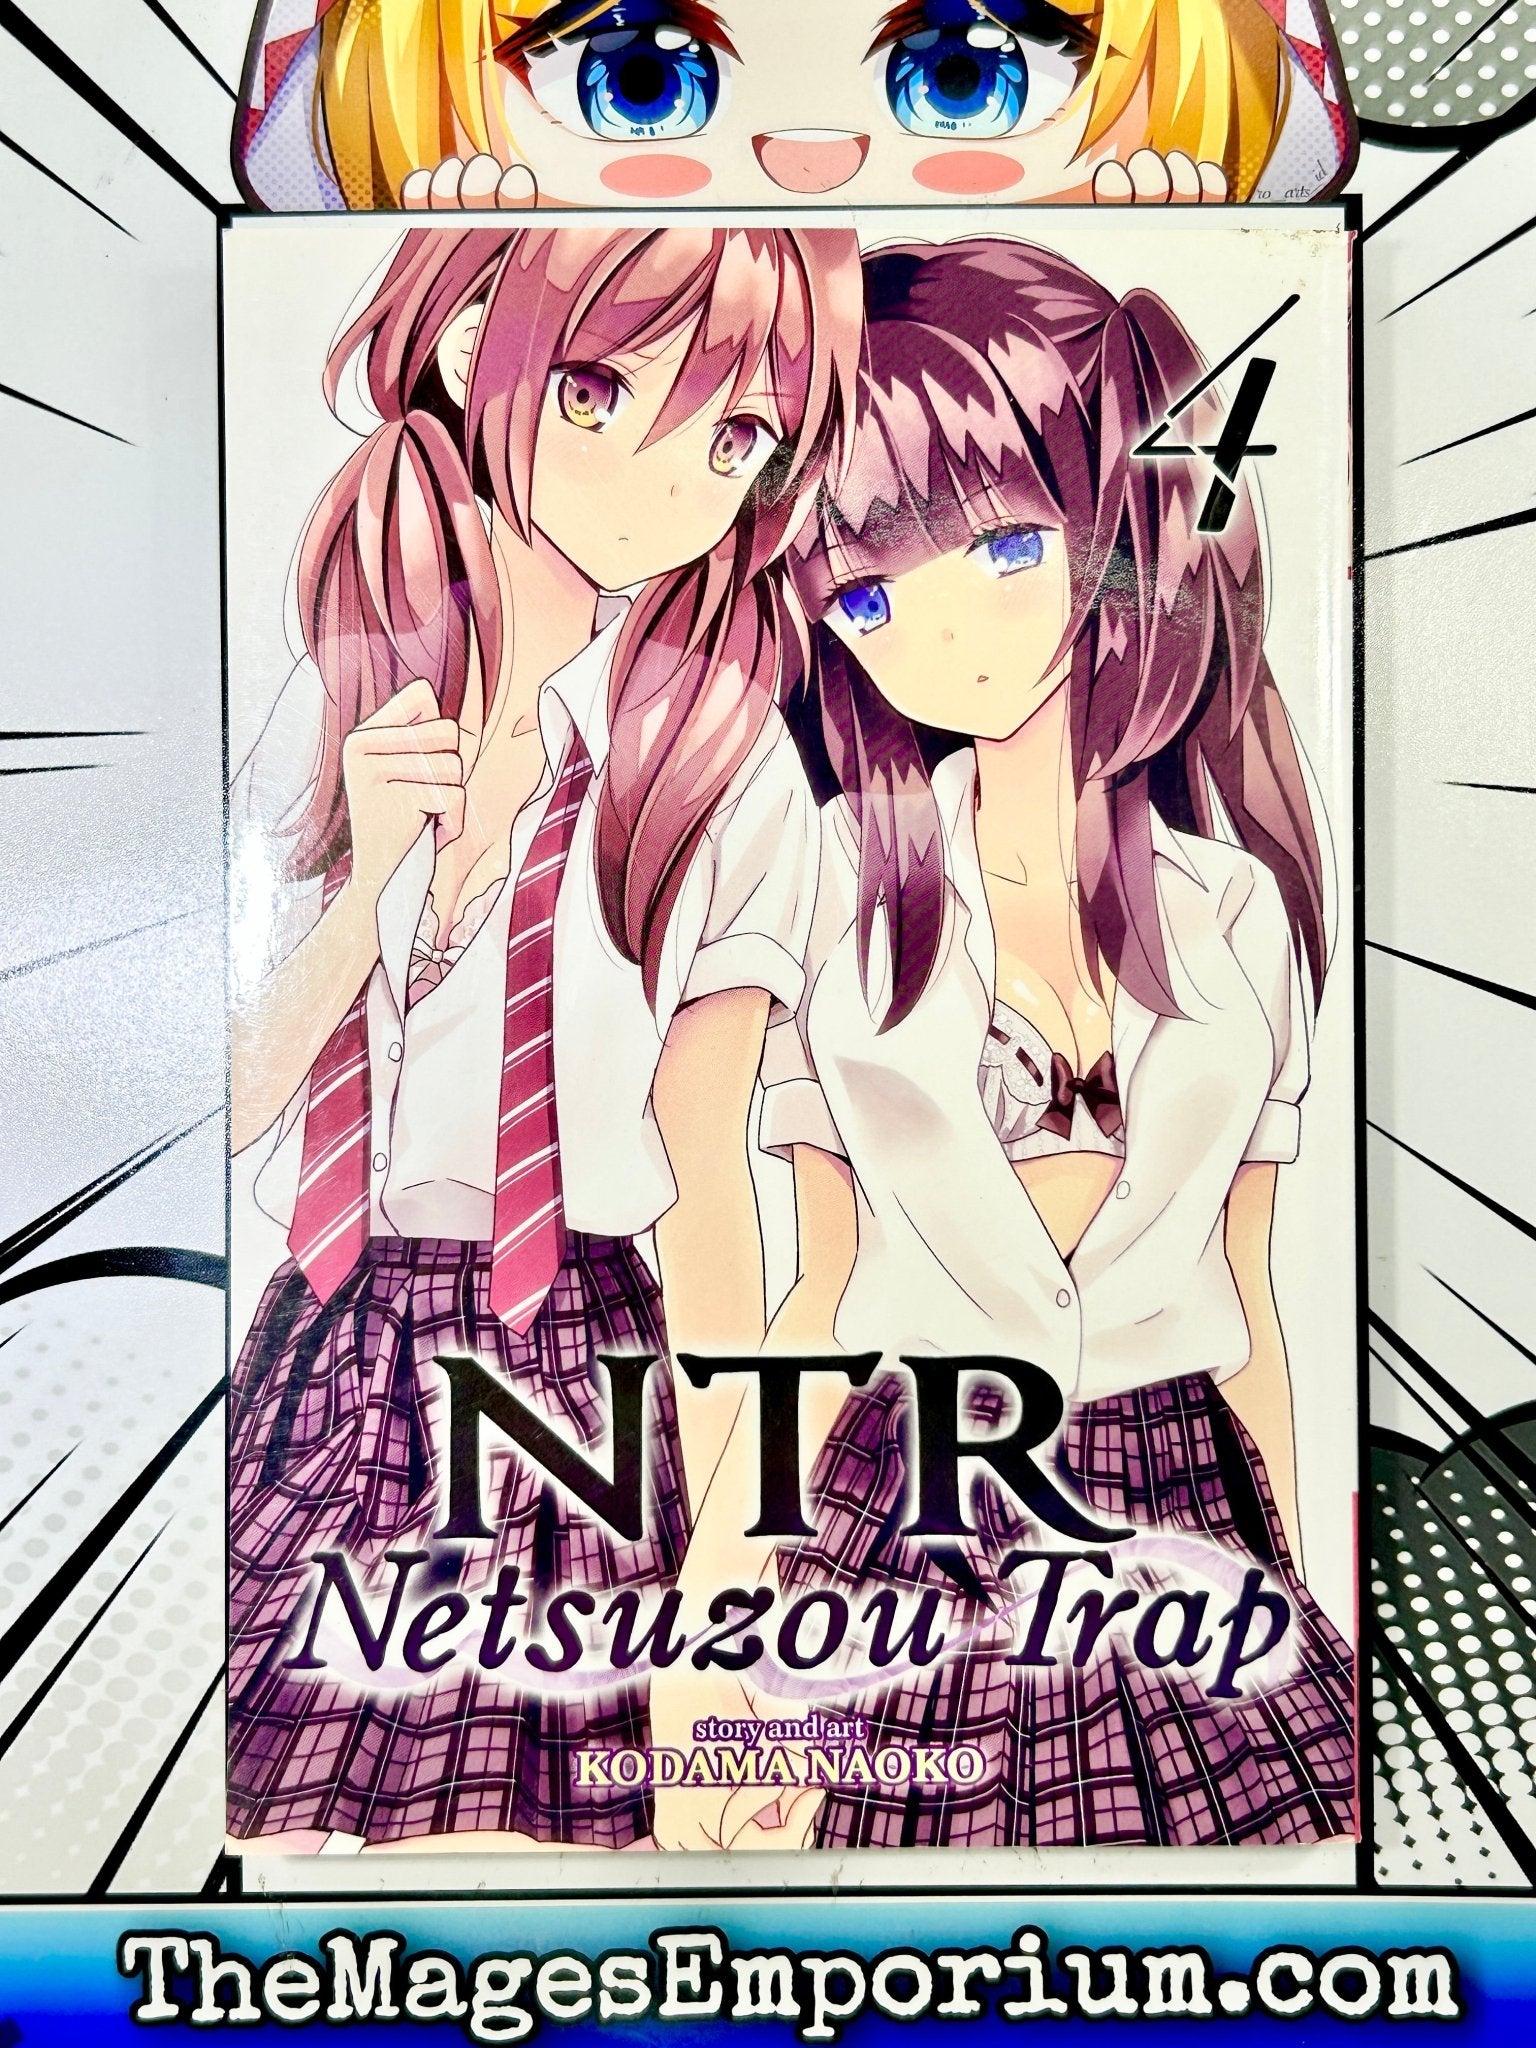 NTR - Netsuzou Trap Vol. 1